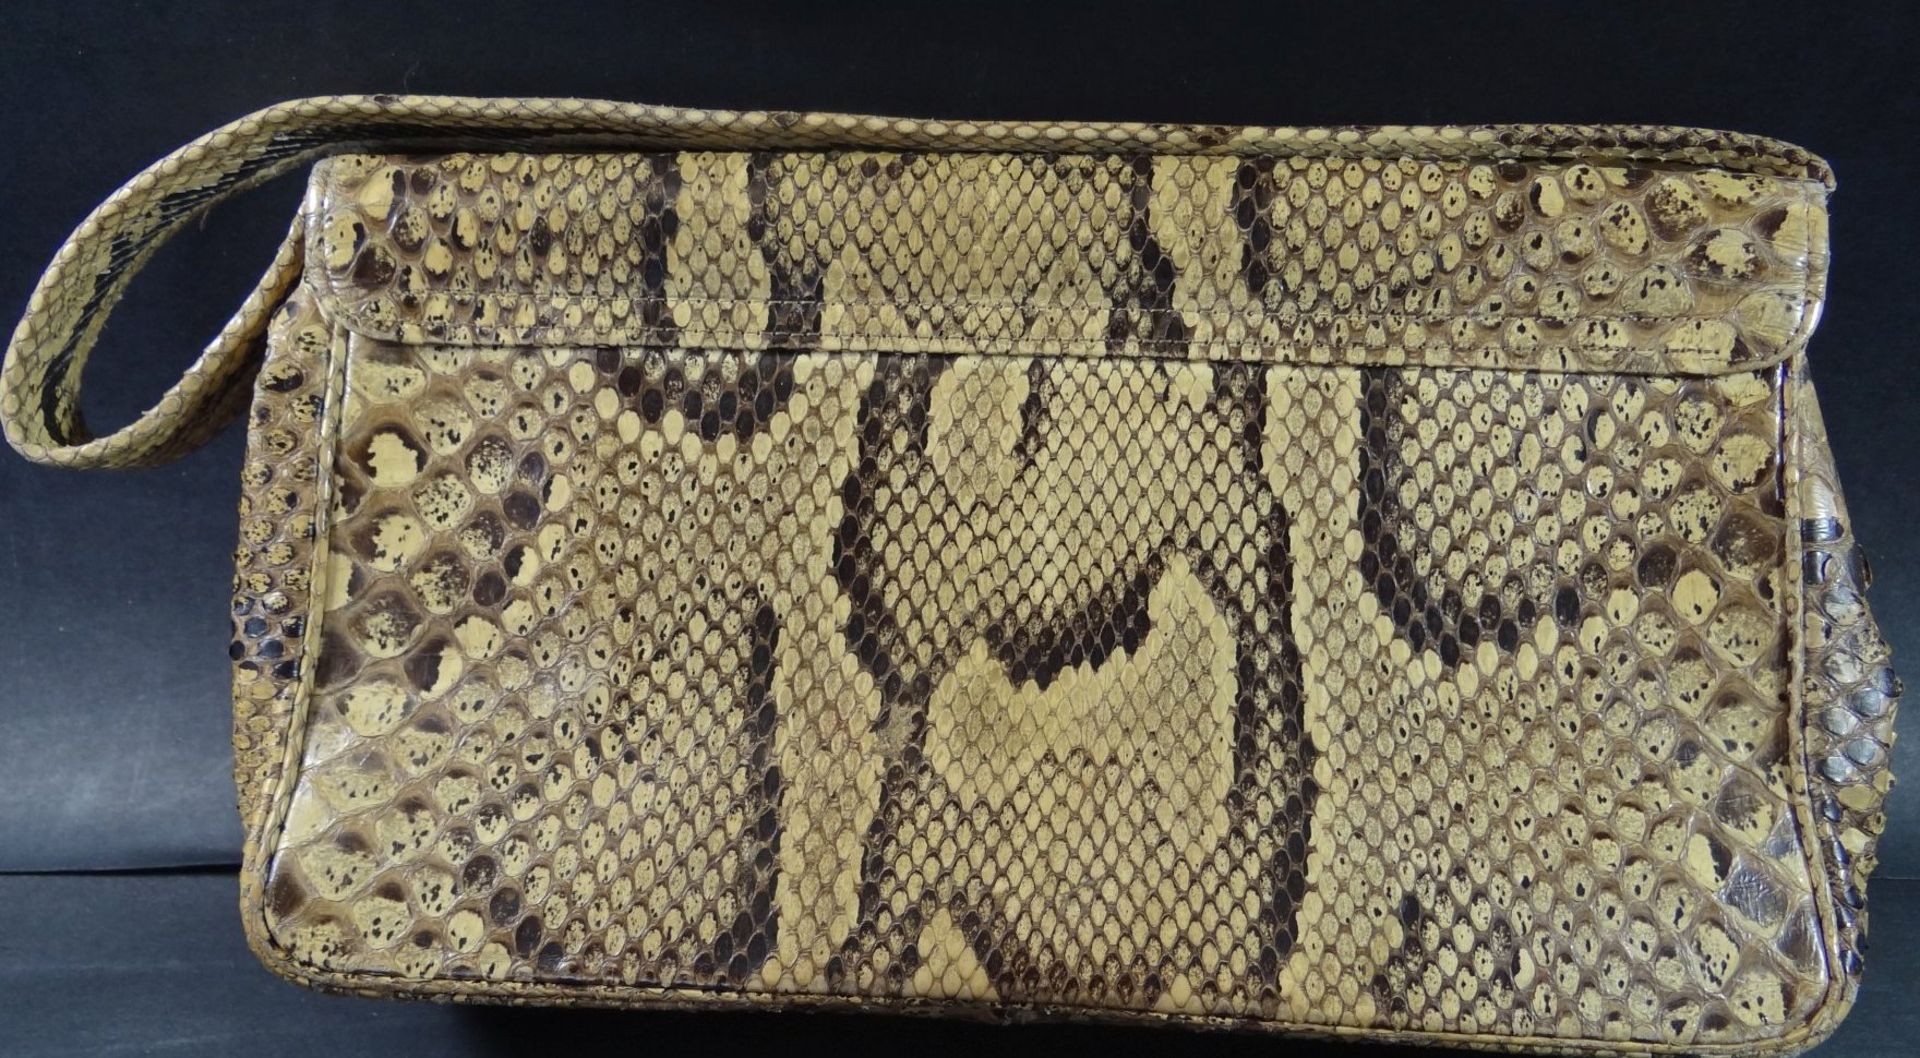 kl. alte Abendtasche, Schlangenleder, 13x25 cm, Alters-u. Gebrauchsspuren - Bild 5 aus 6